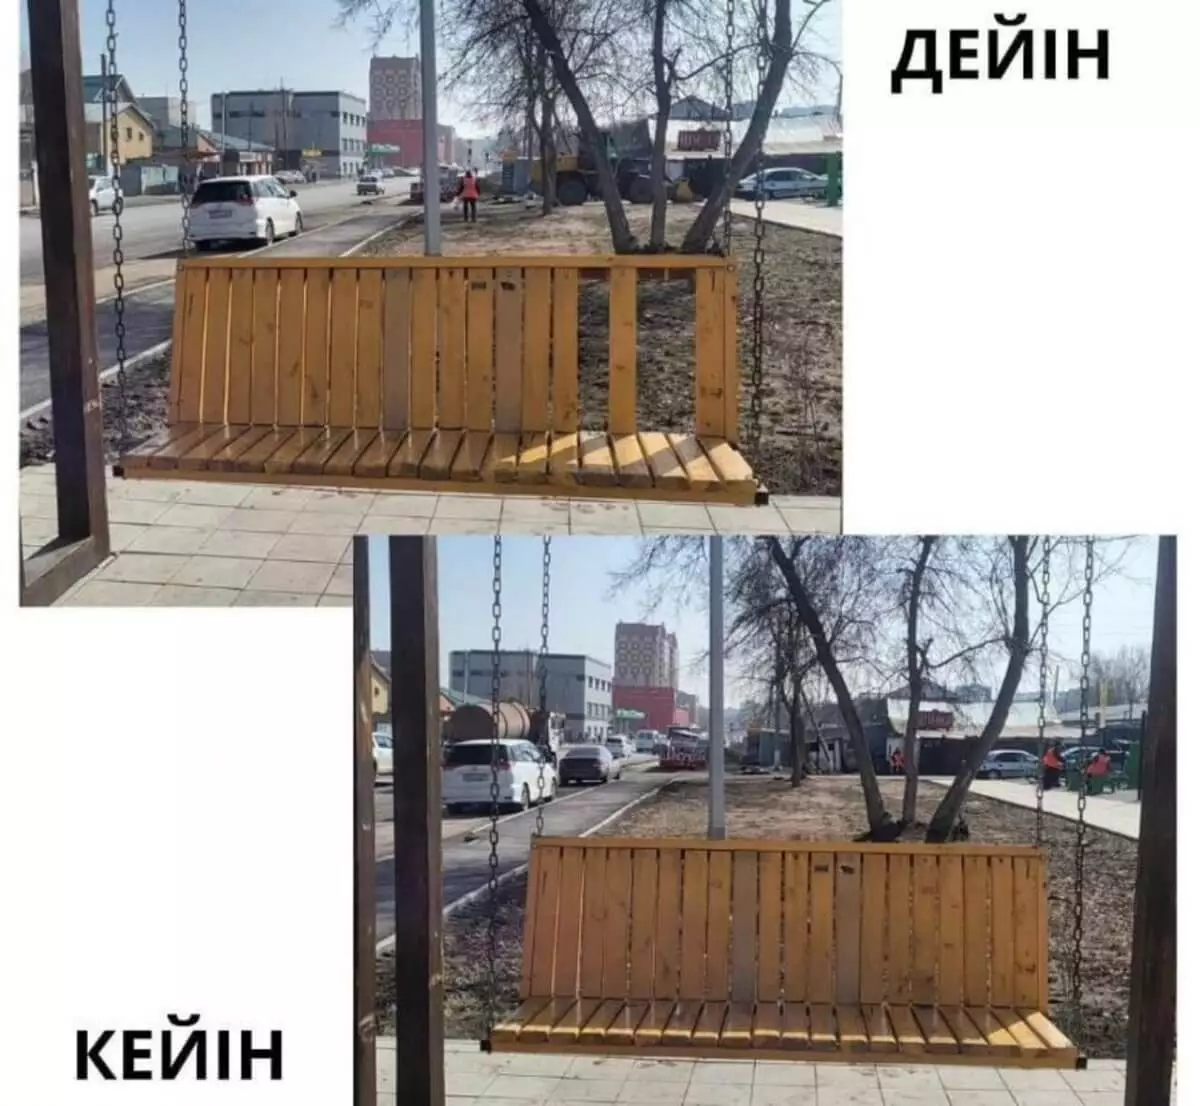 Астанада абаттандыру және санитарлық тазалау бойынша ауқымды жұмыстар жүргізіліп жатыр